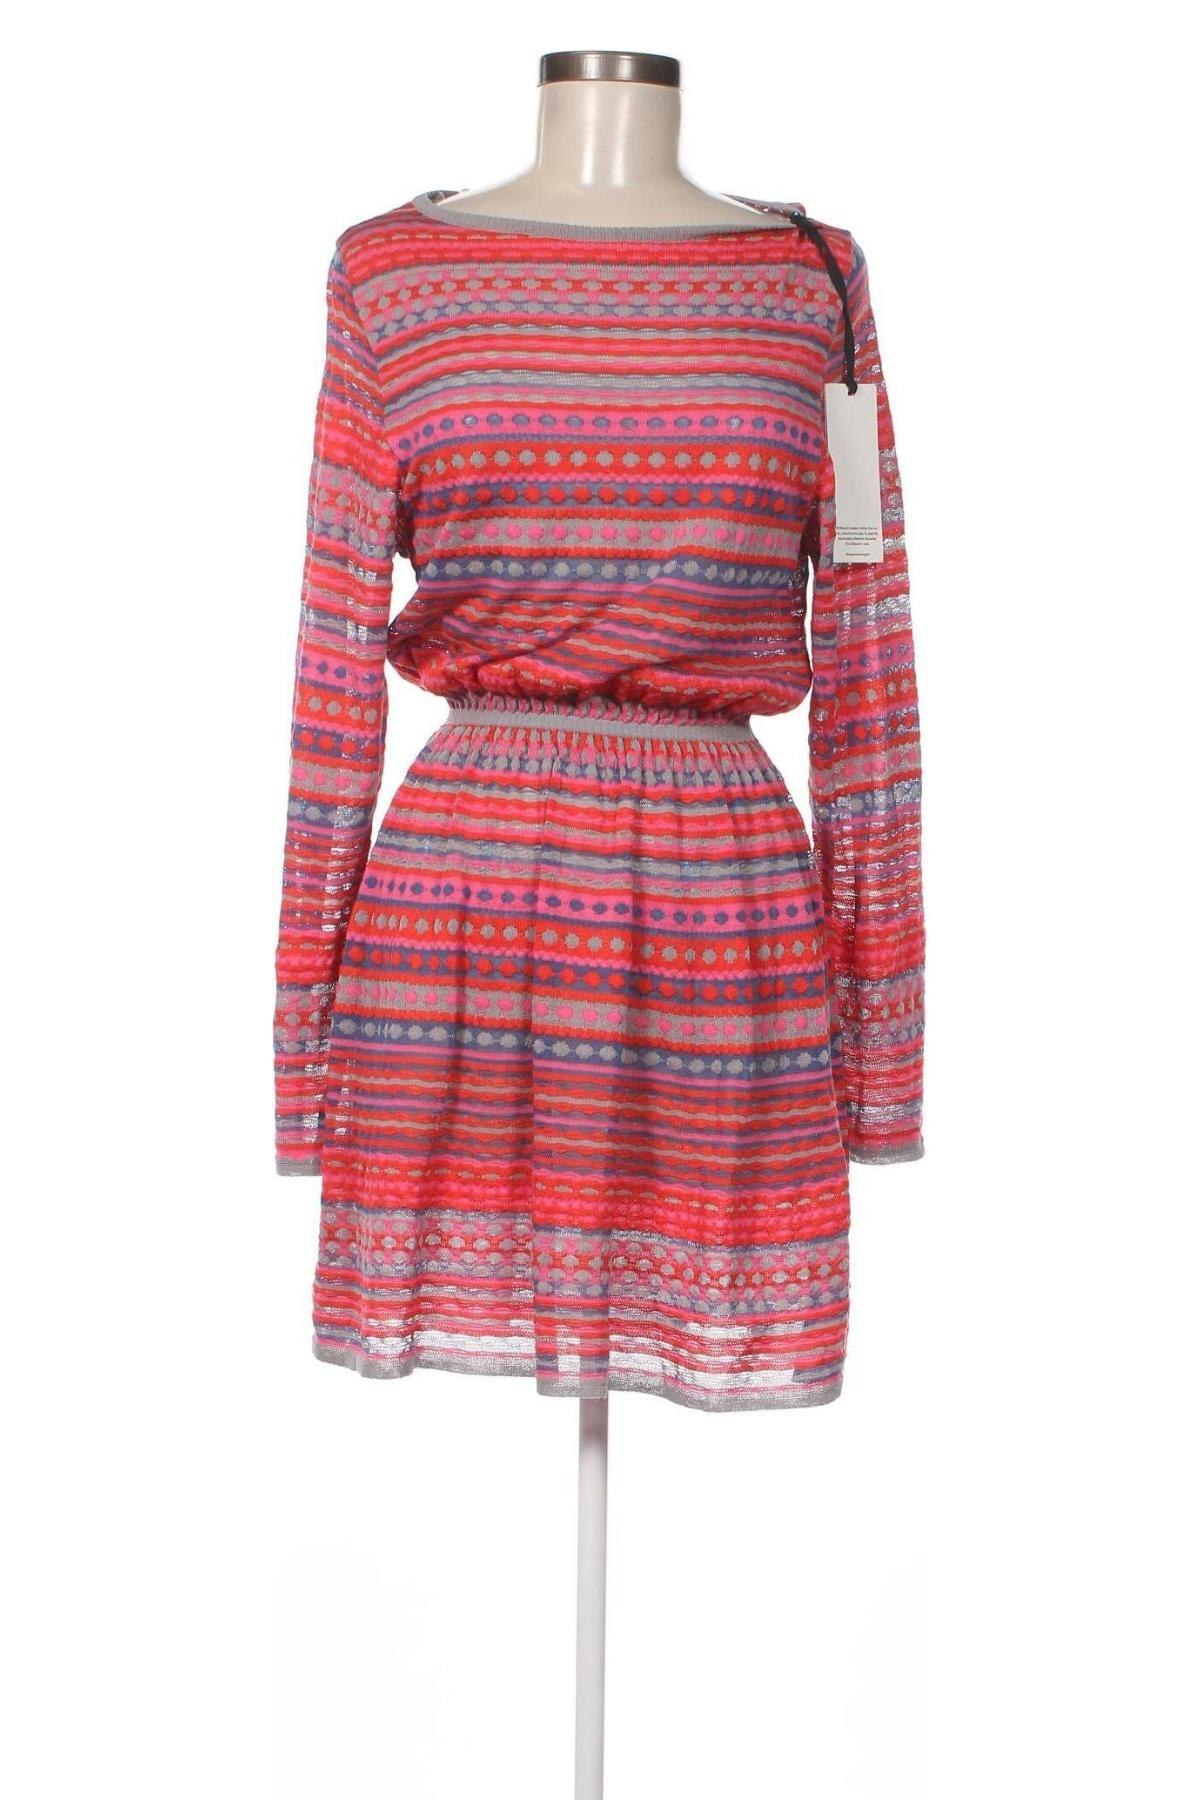 Φόρεμα M Missoni, Μέγεθος L, Χρώμα Πολύχρωμο, Τιμή 190,50 €